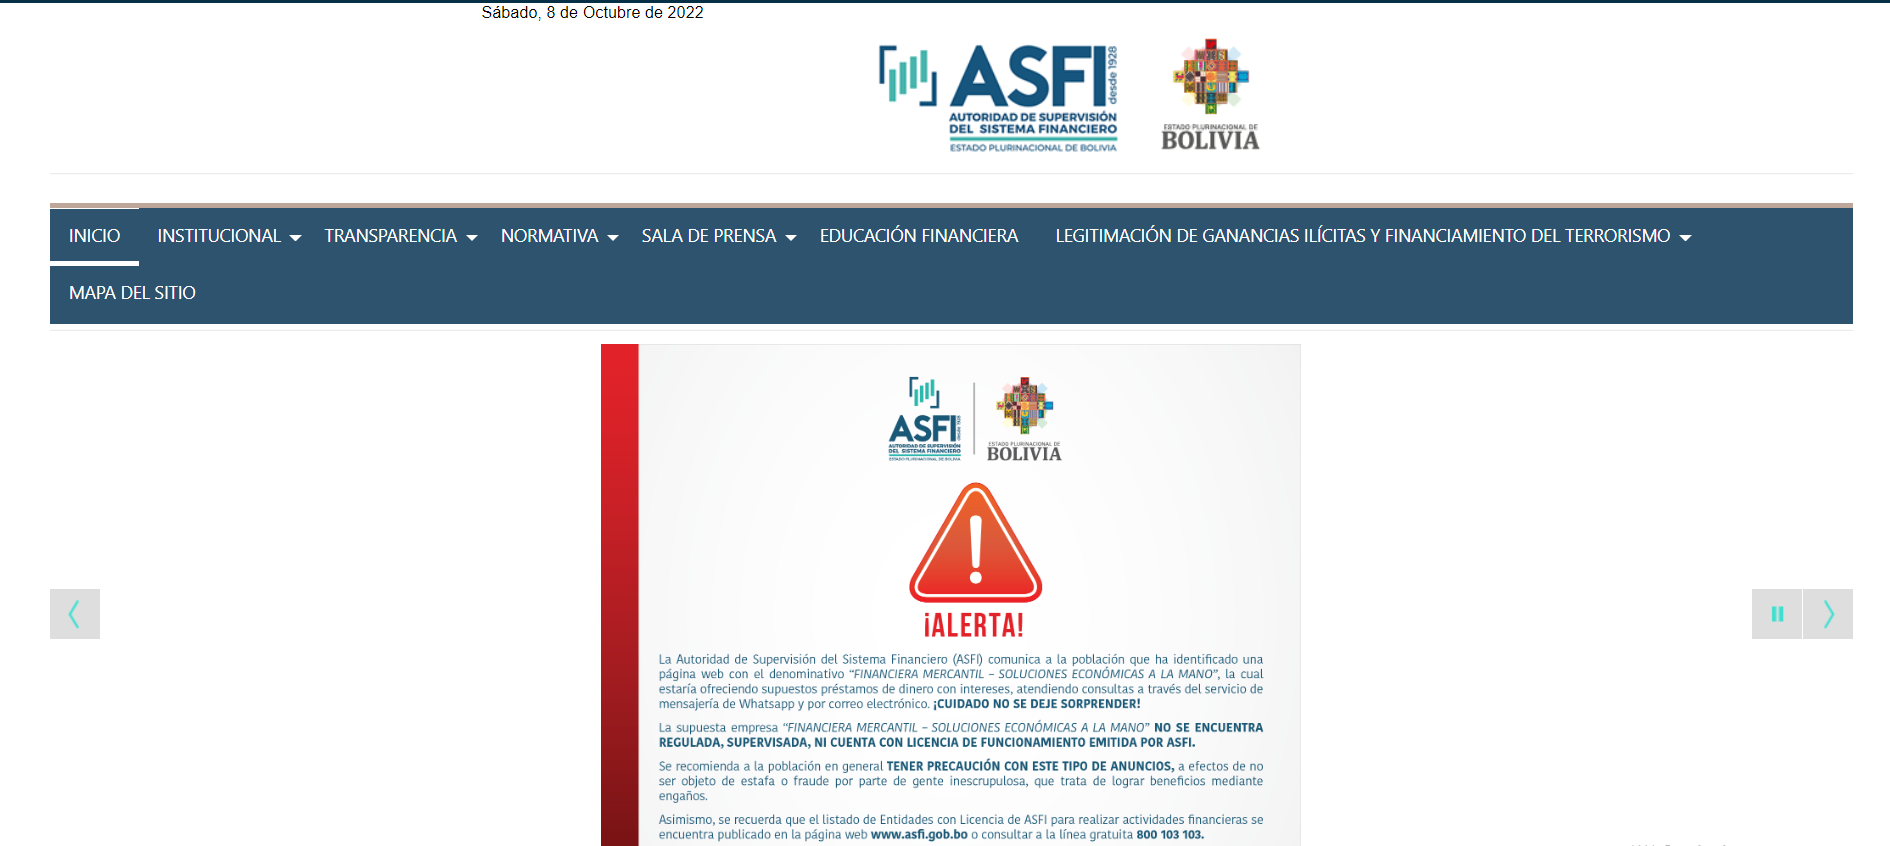 玻利维亚金融监管局系统（ASFI）